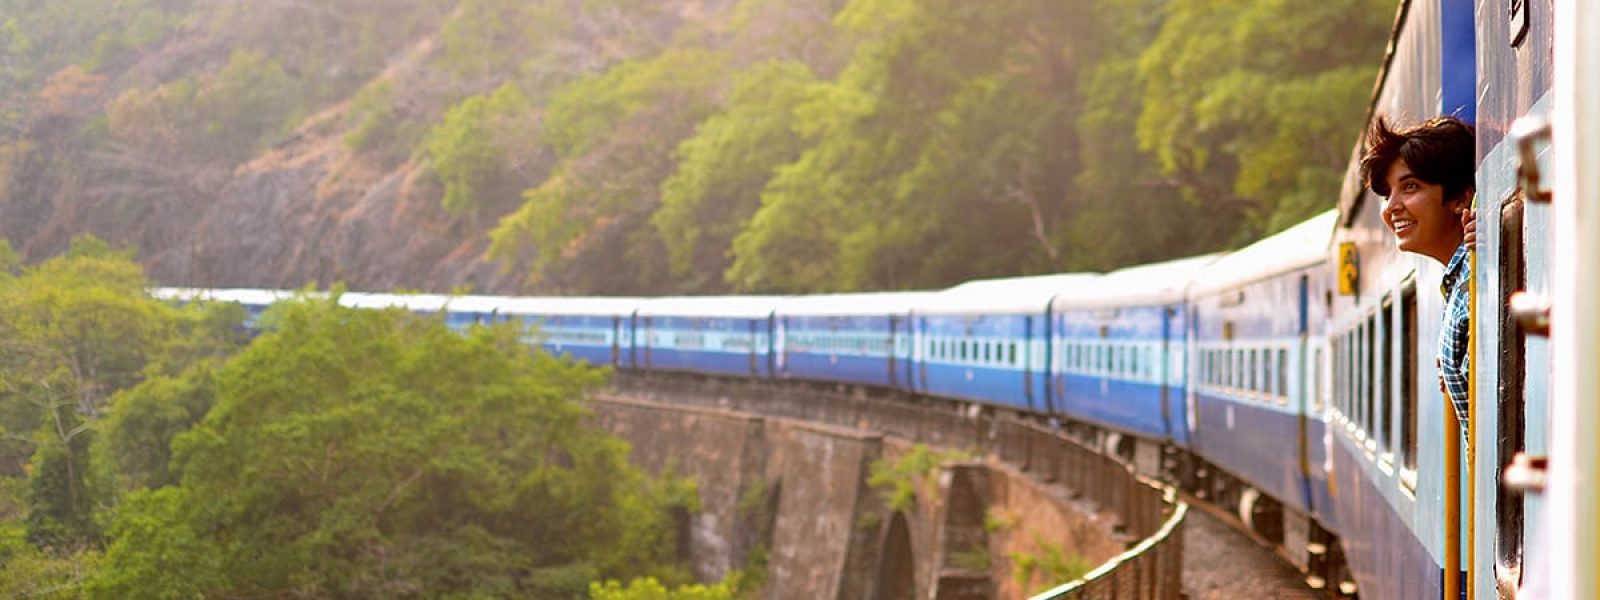 treinreizen door zuid india